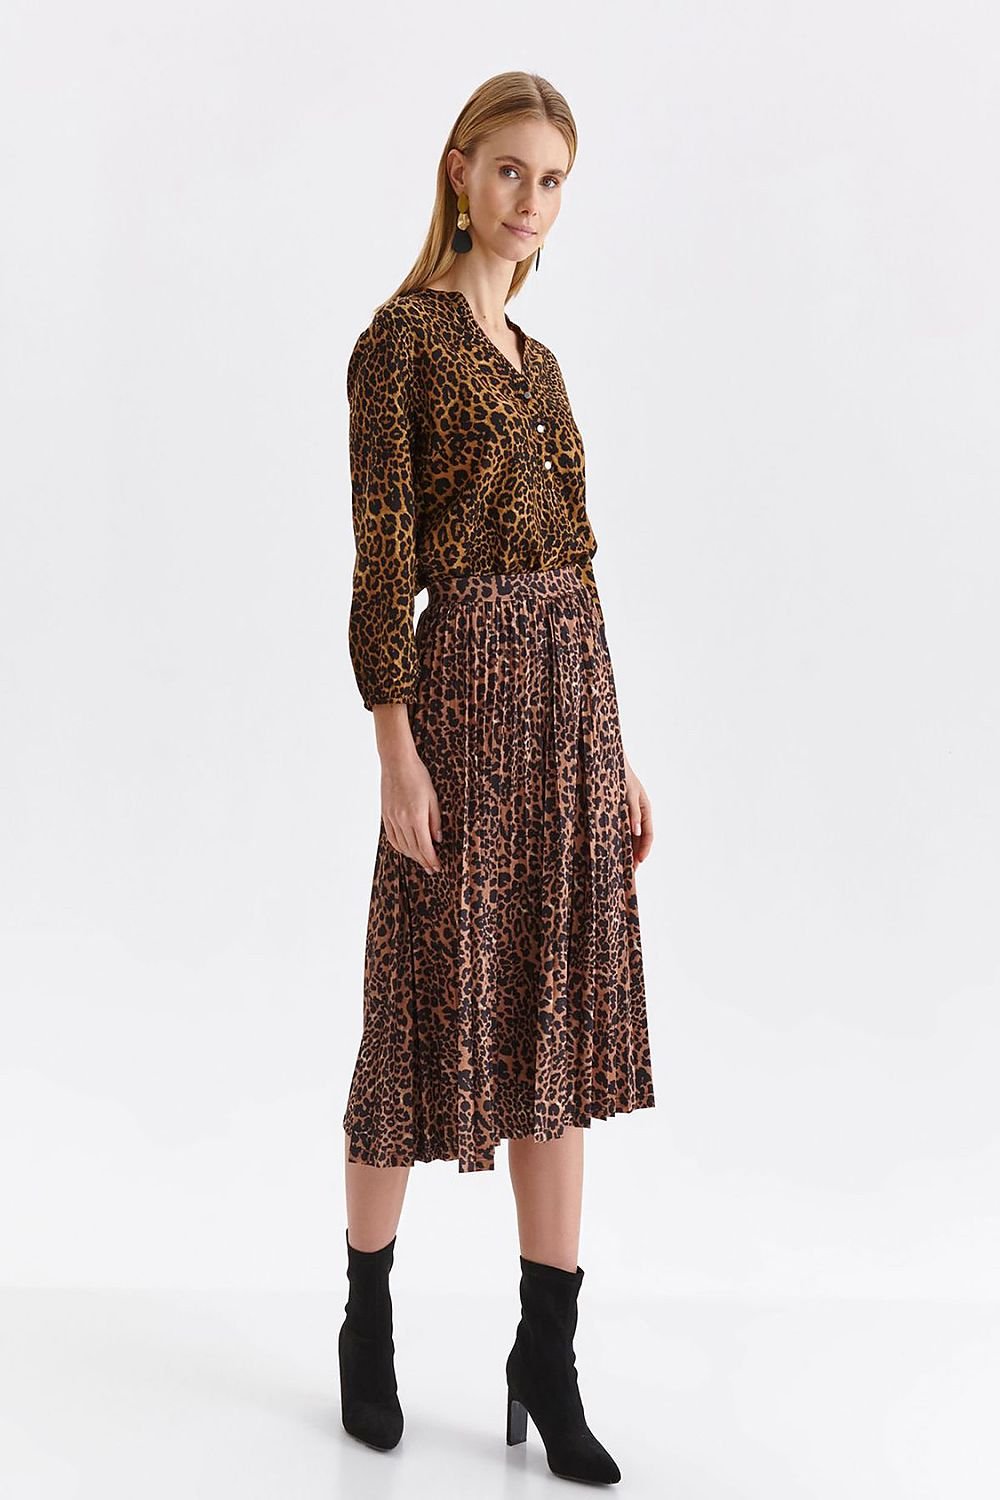 Jupe midi plissée motif léopard pour un look sauvage et tendance, idéale pour une sortie ou une garde-robe stylée.